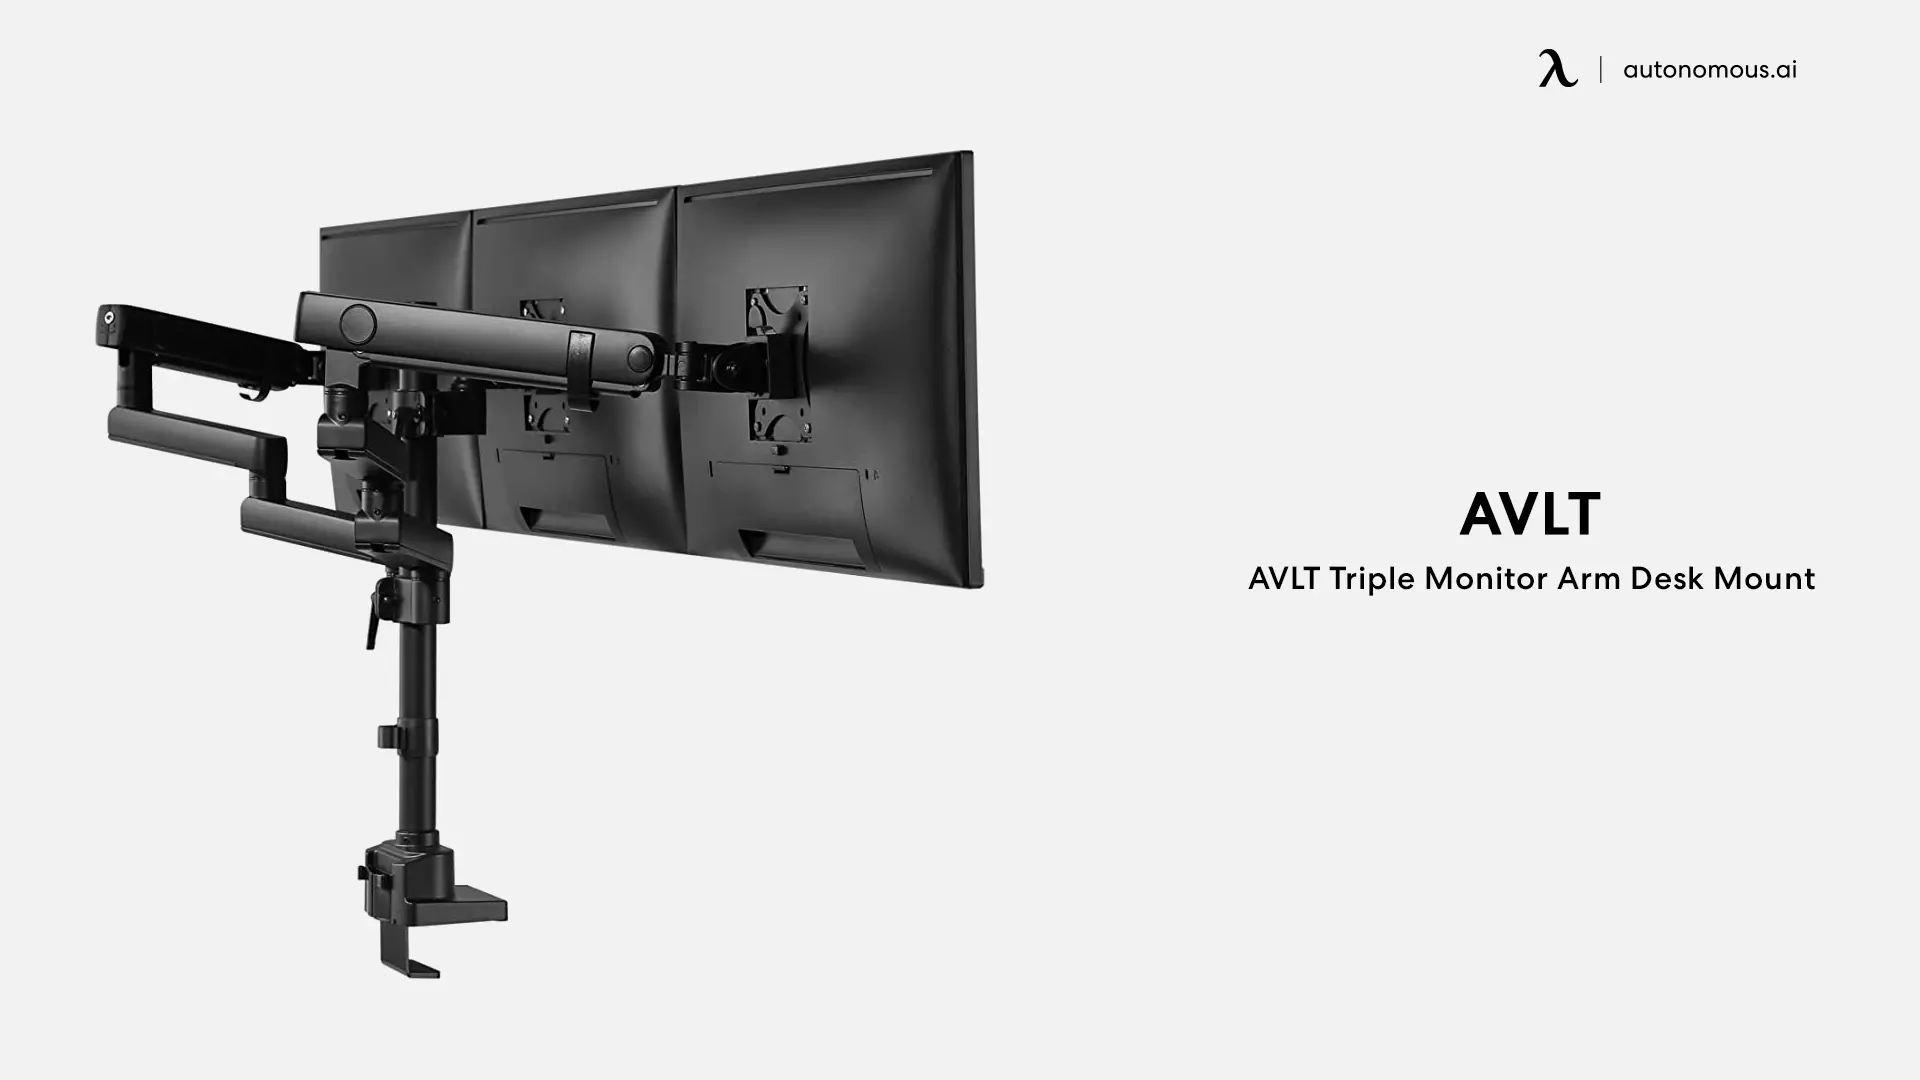 AVLT Triple Monitor Arm Desk Mount